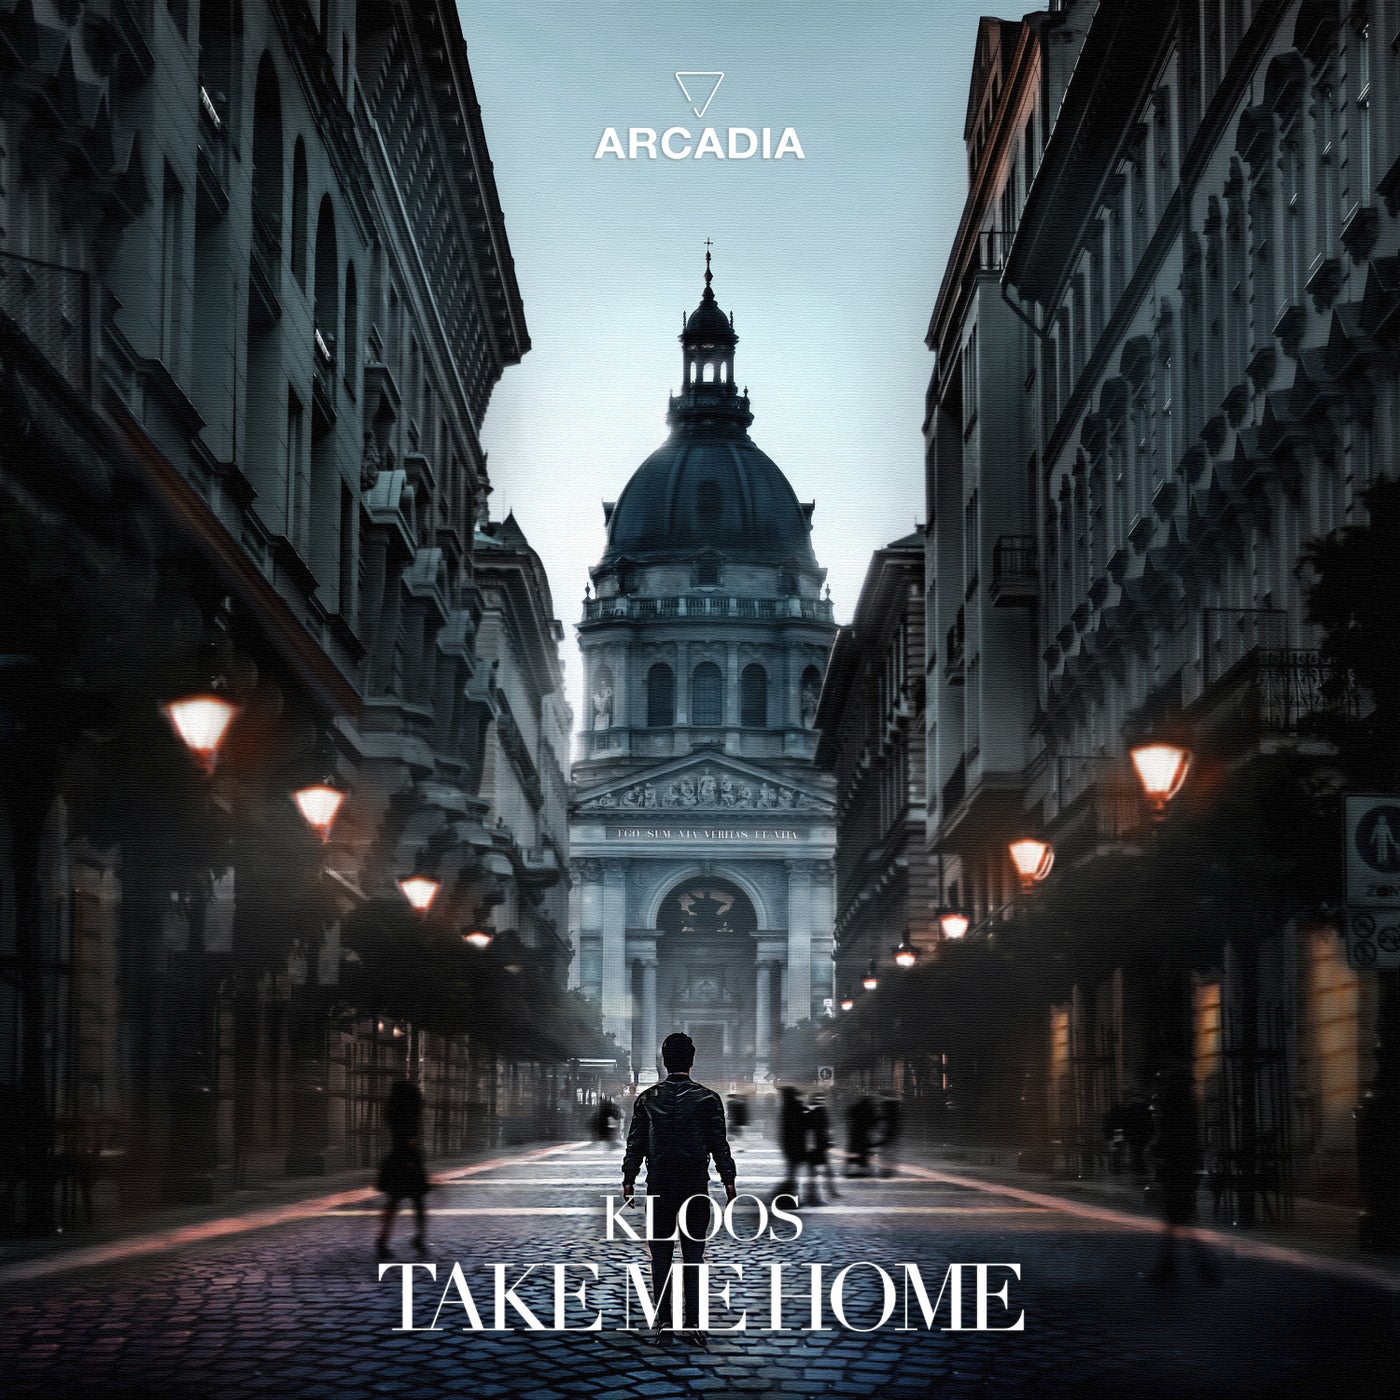 Kloos – Take Me Home [ARCM010B]